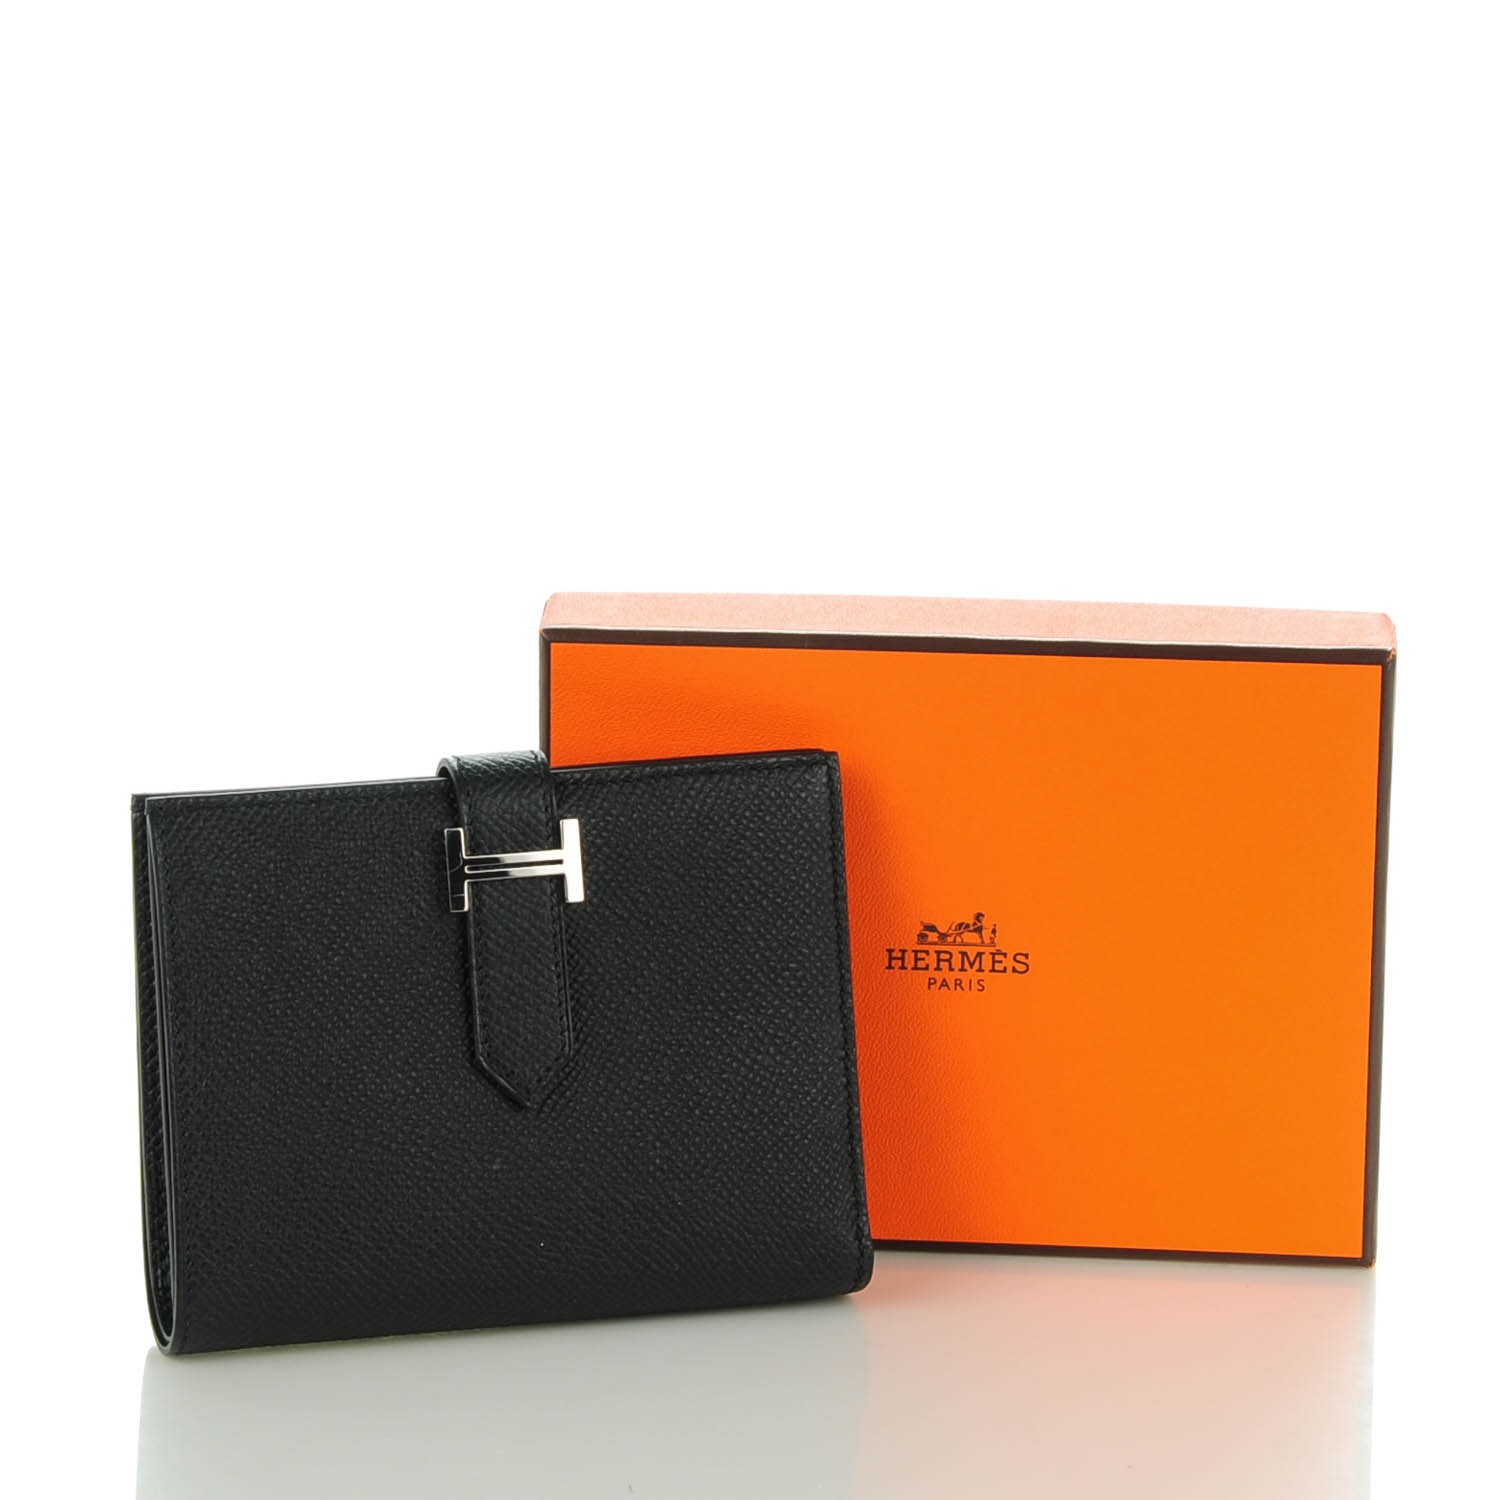 HERMES Epsom Bearn Compact Wallet Black 137068